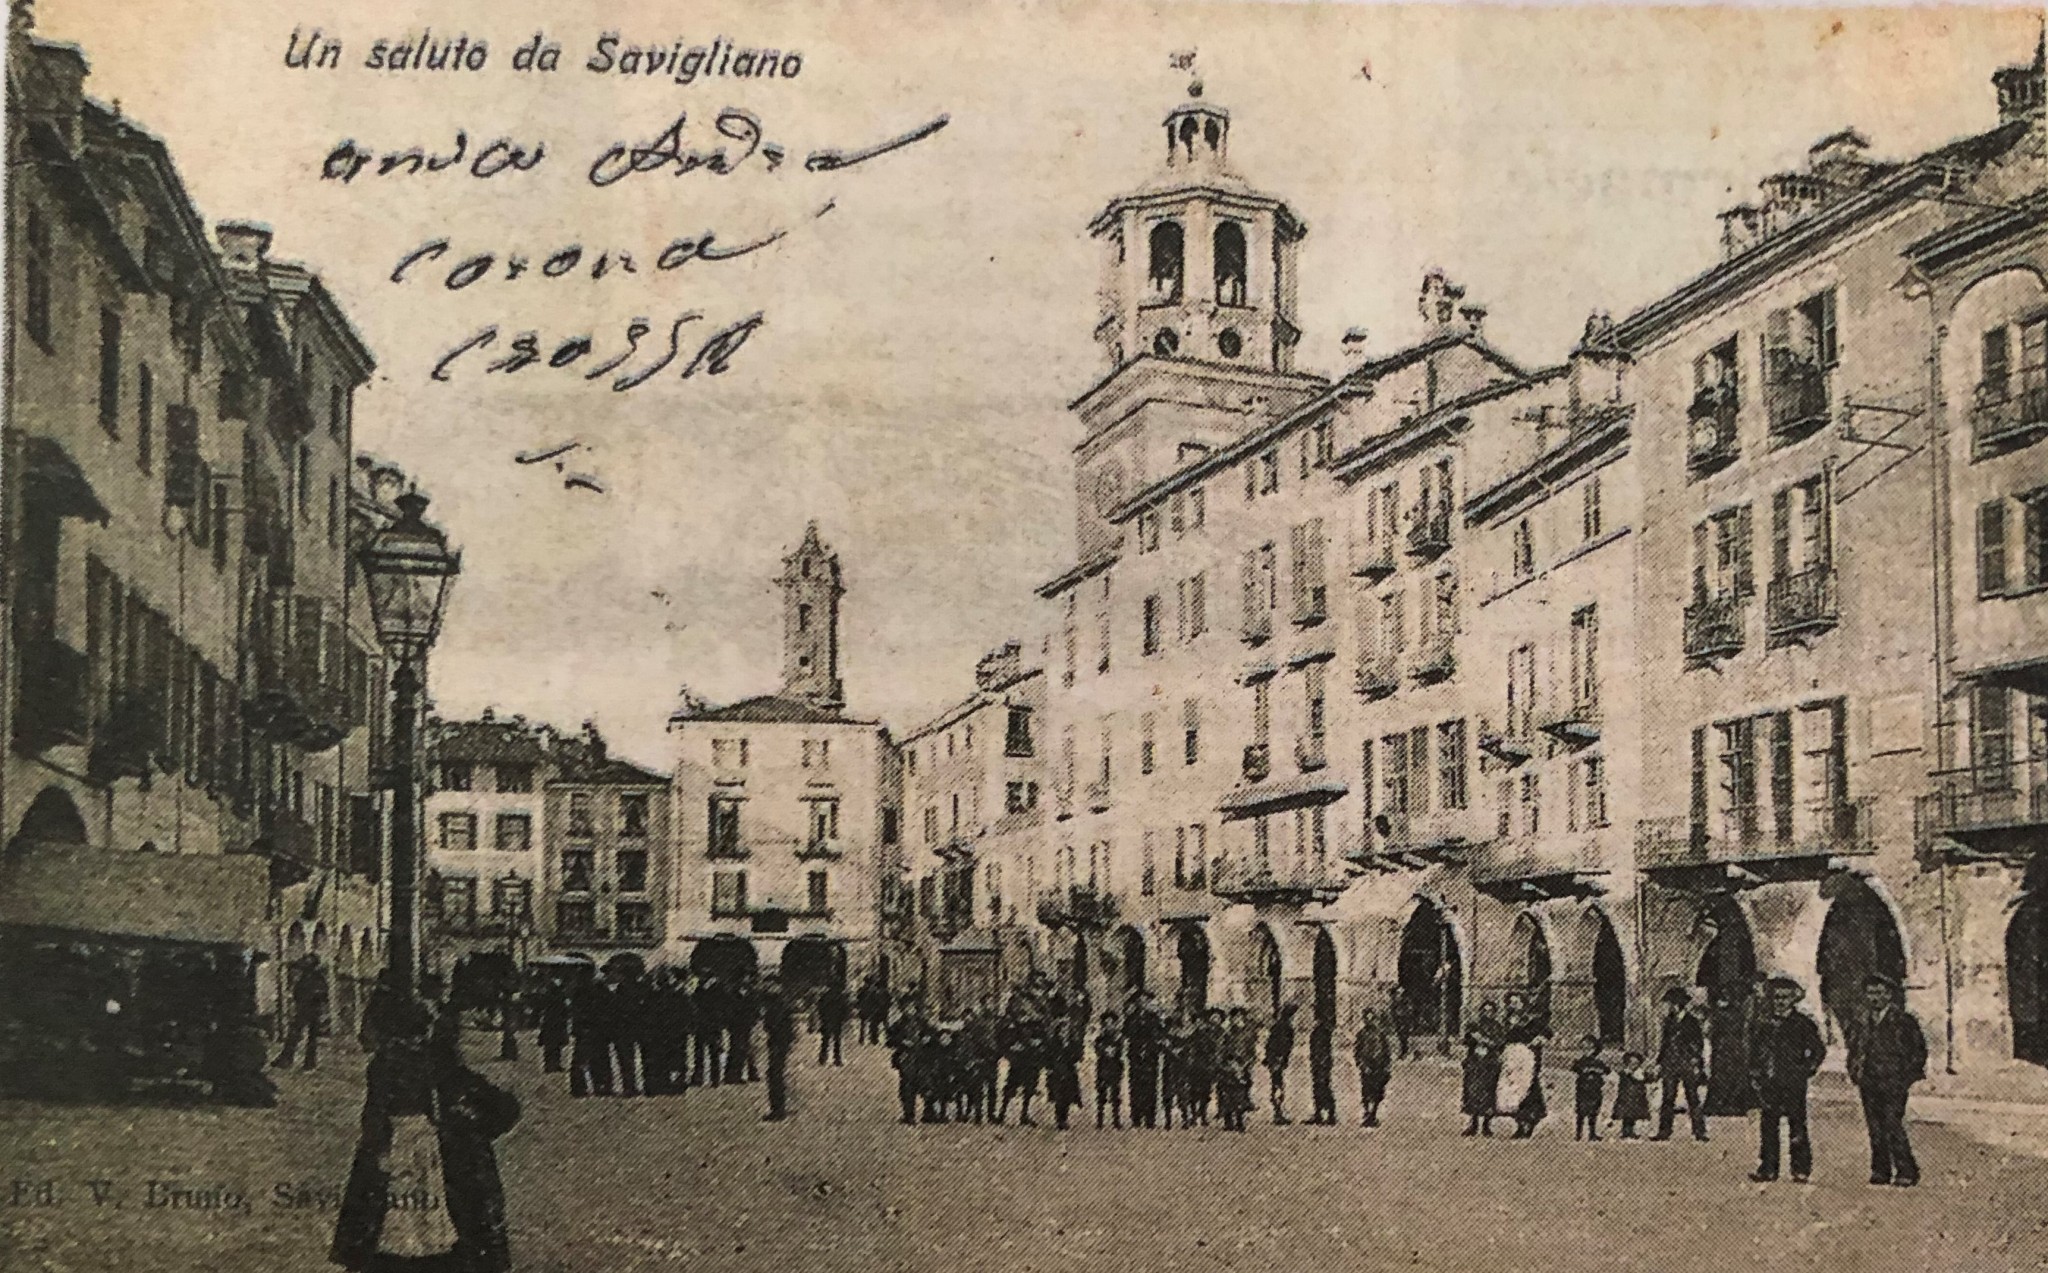 Savigliano, Piazza Santa Rosa